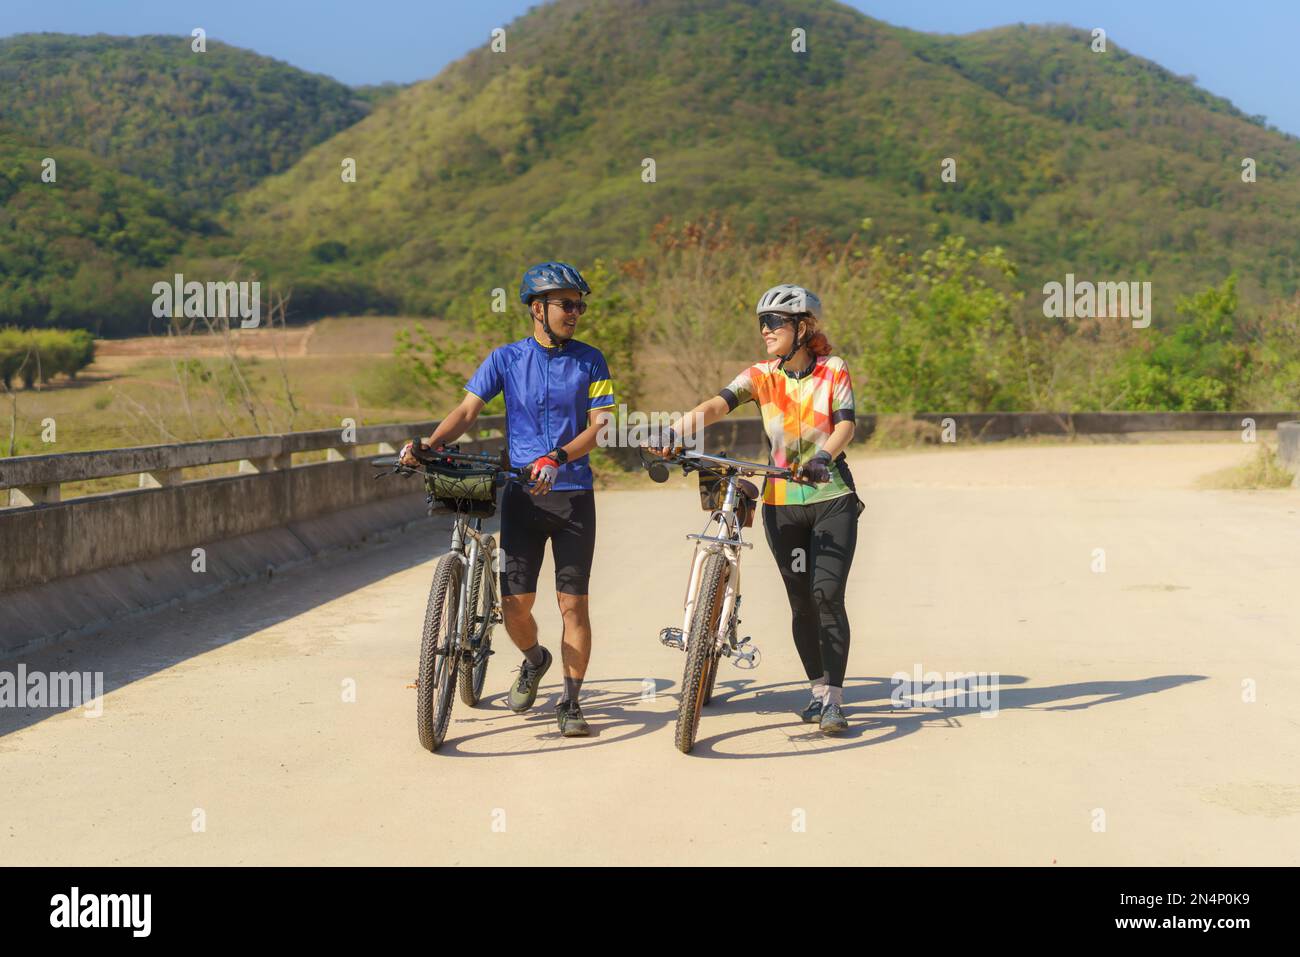 Asiatisches Fahrradpaar, das eine Pause vom Radfahren macht, macht eine Pause, geht spazieren und redet miteinander, um sich zu entspannen. Stockfoto